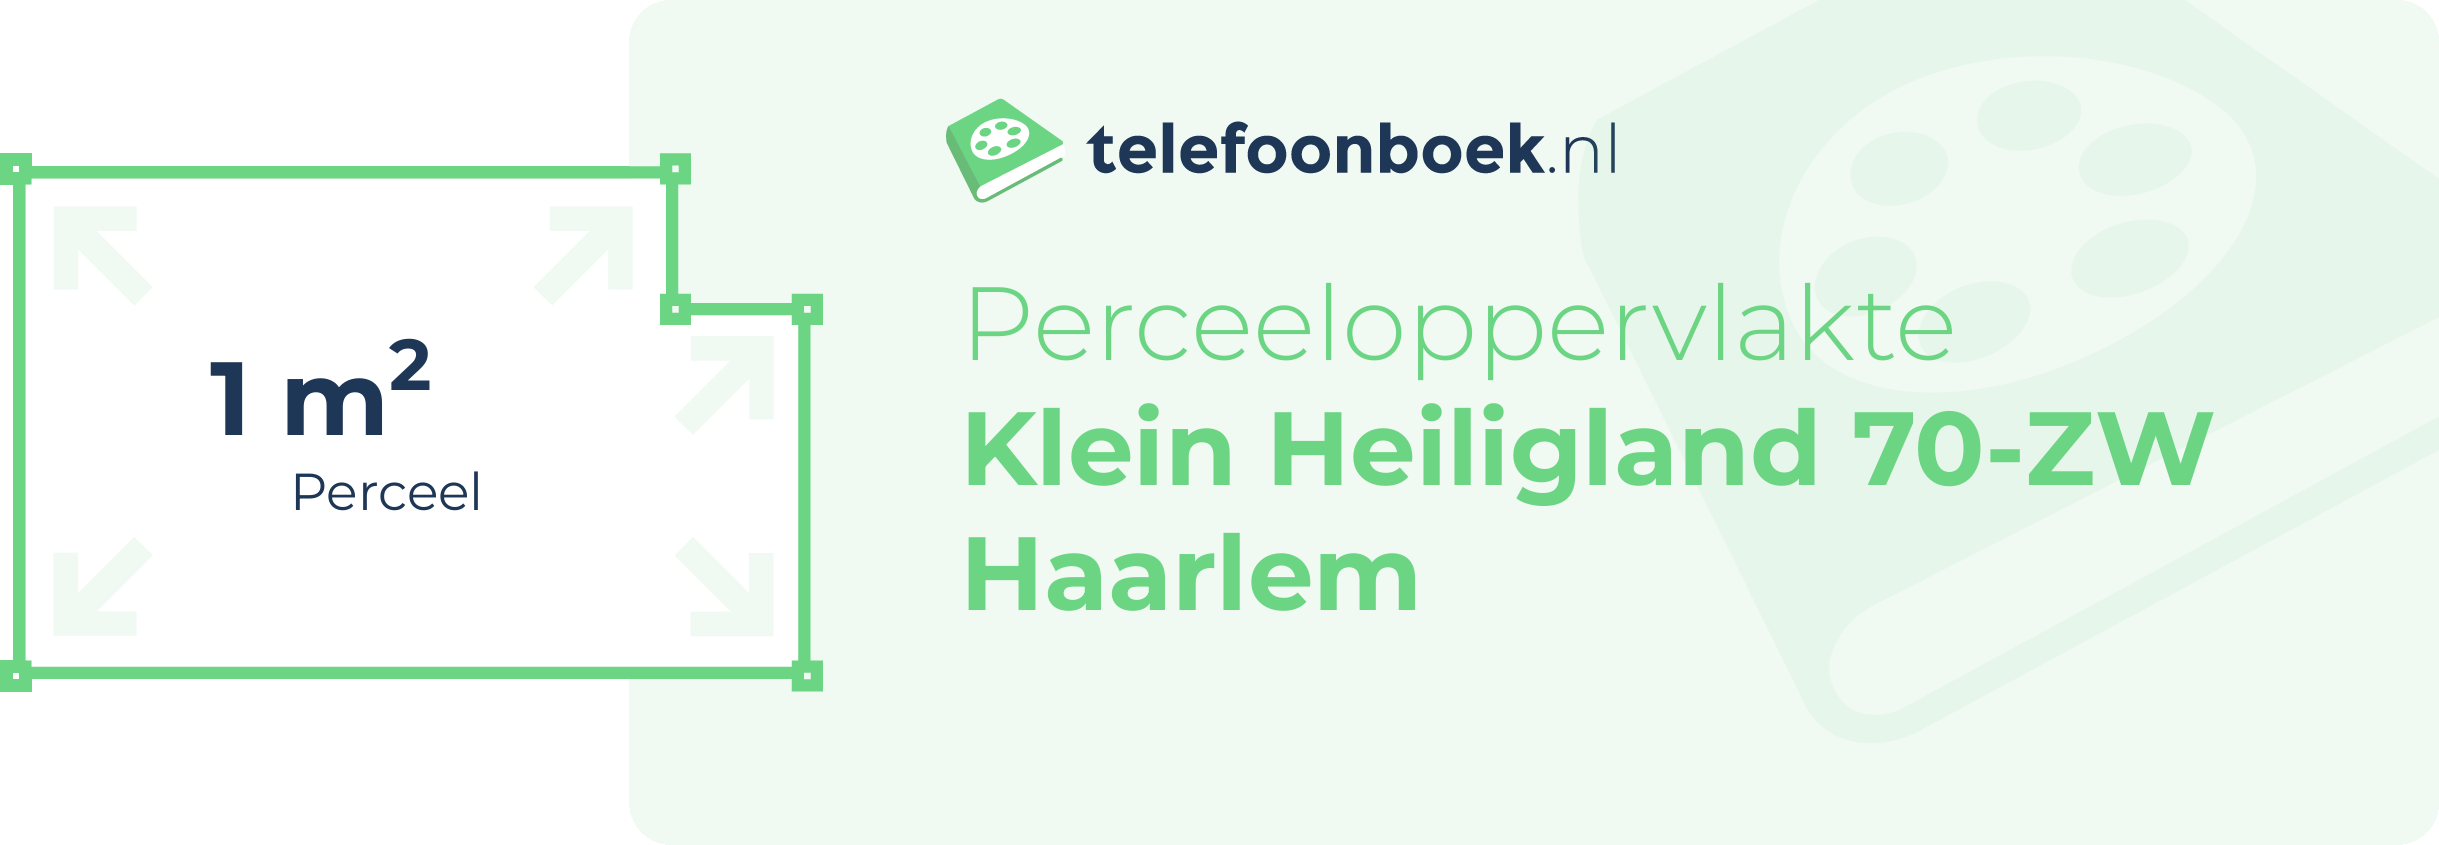 Perceeloppervlakte Klein Heiligland 70-ZW Haarlem